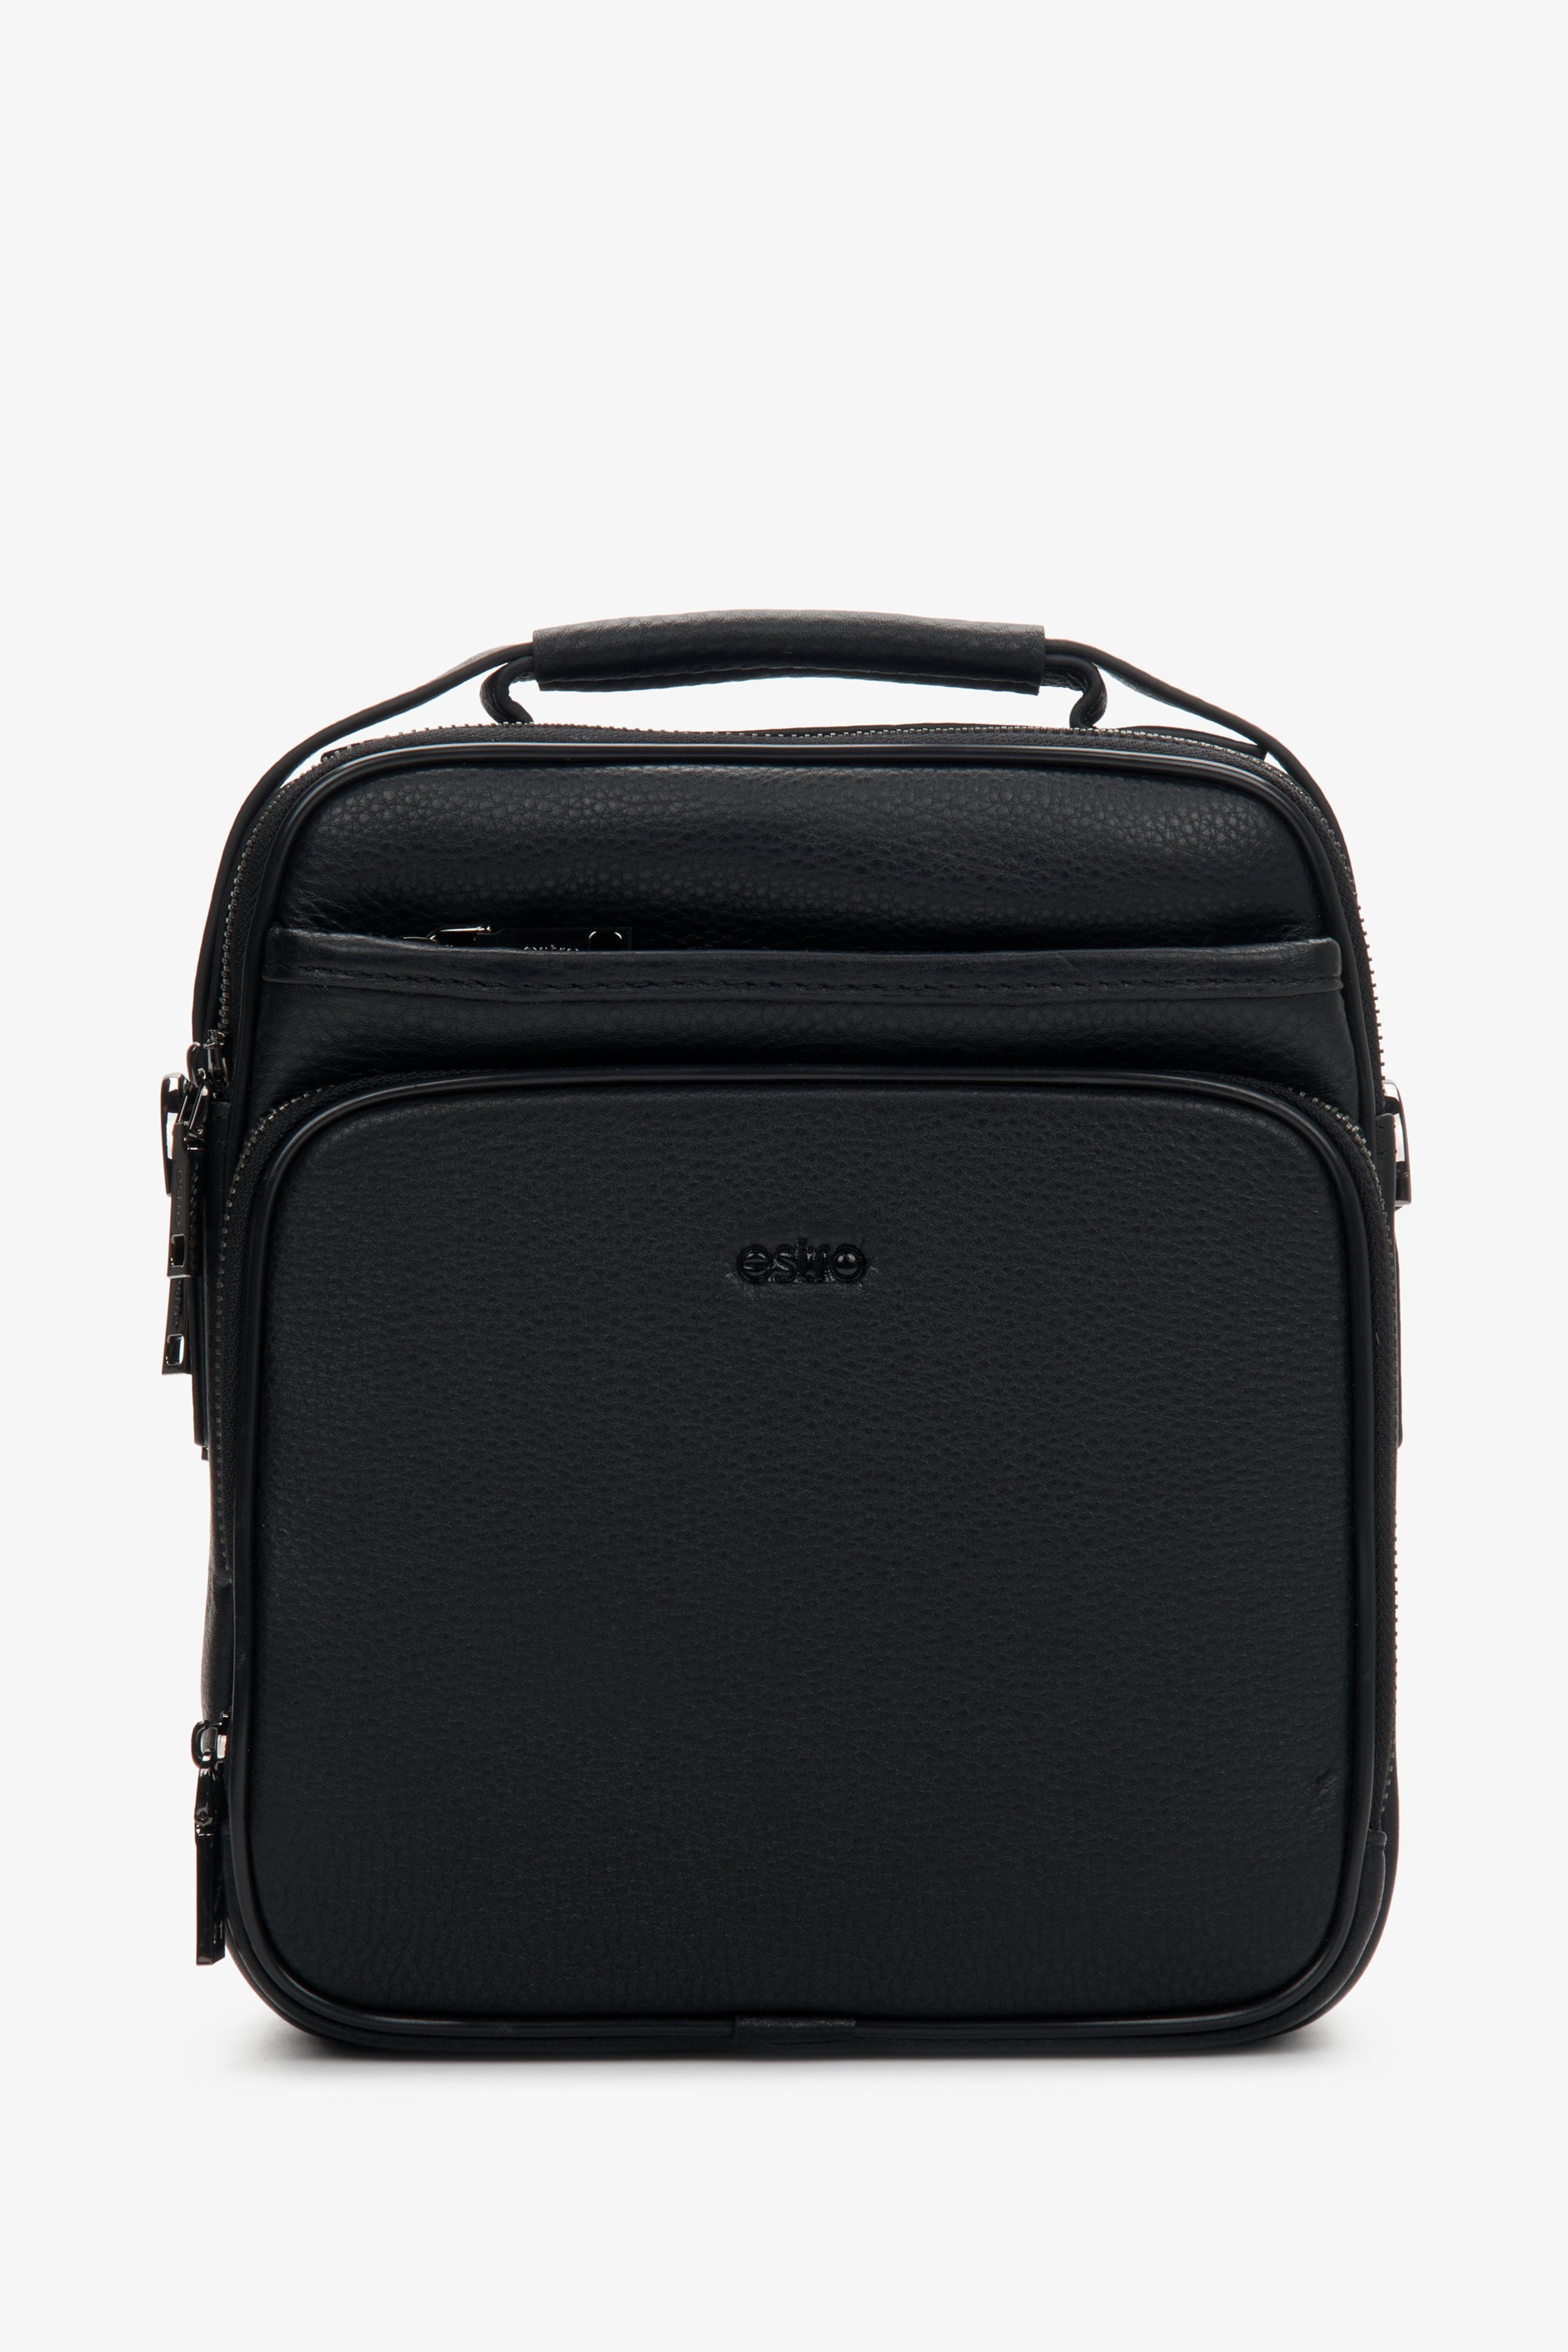 Men's Black Leather Waist Bag with Adjustable Strap Estro ER00110925.